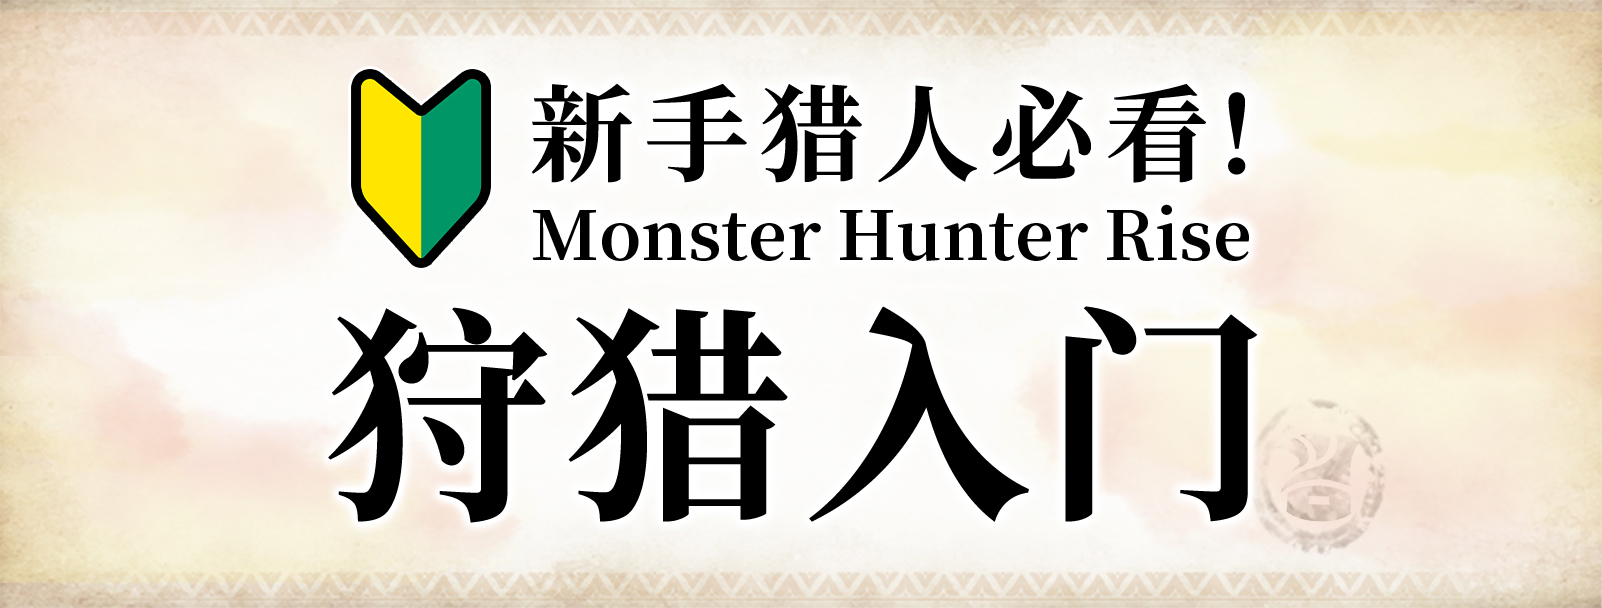 Monster Hunter Rise狩猎入门